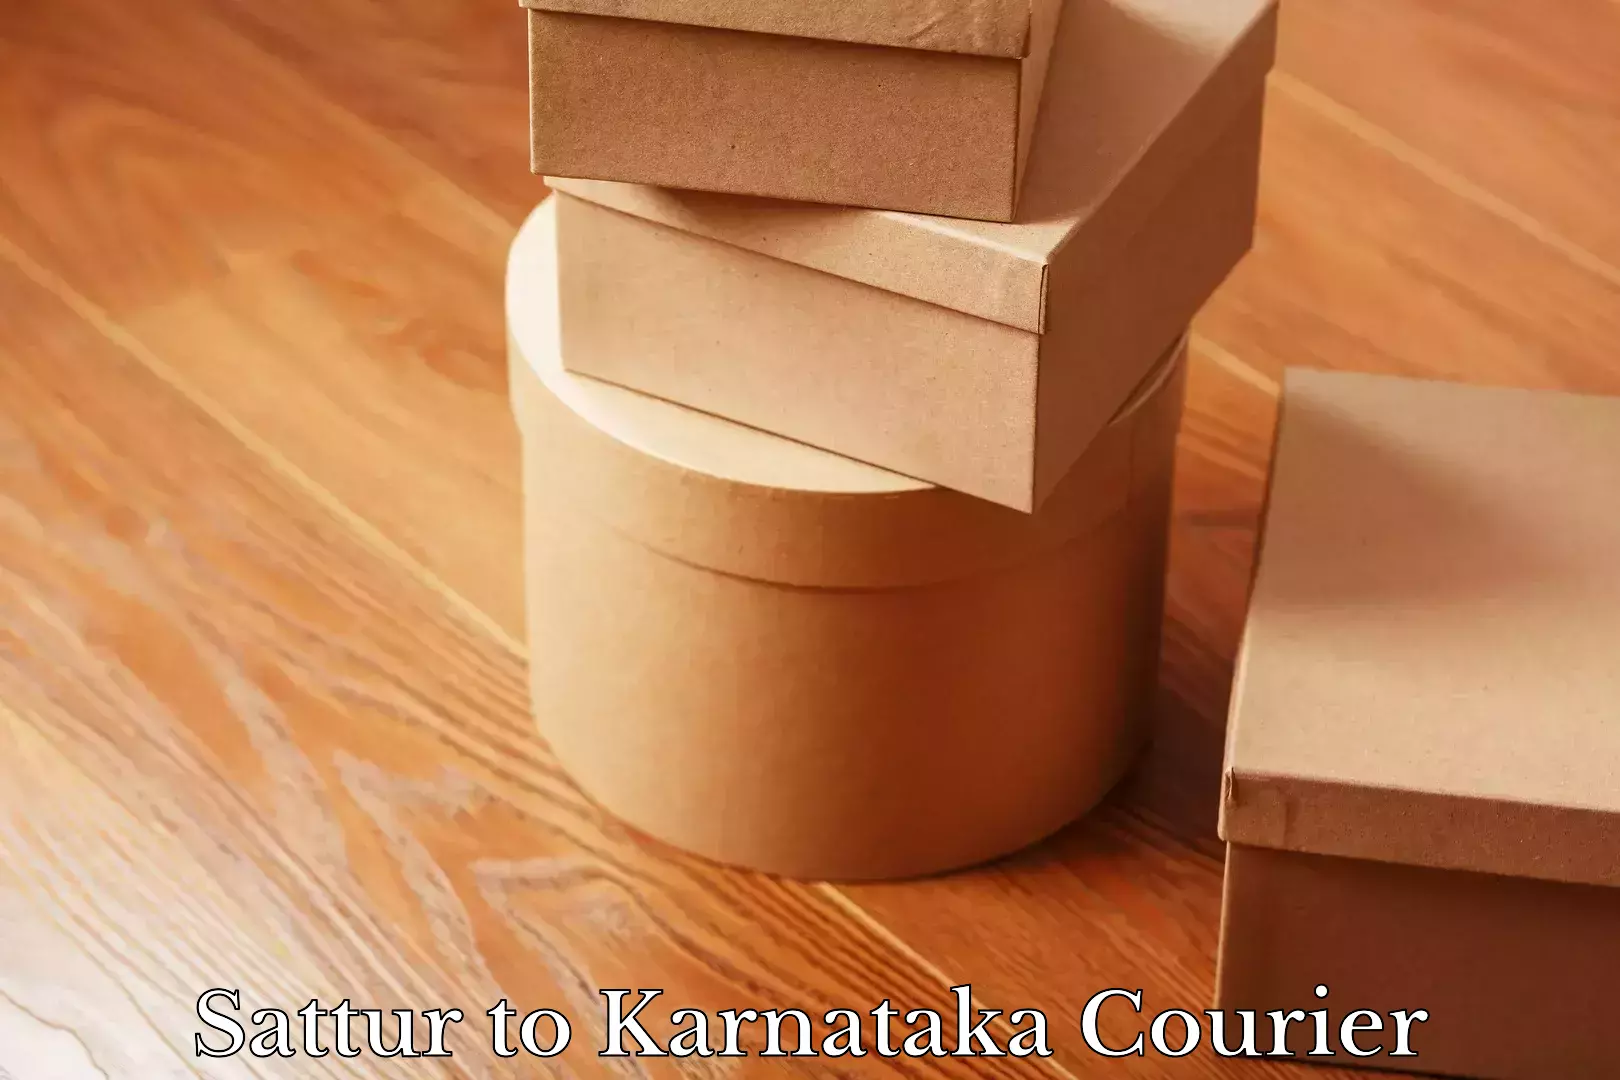 Bulk shipment Sattur to Karnataka